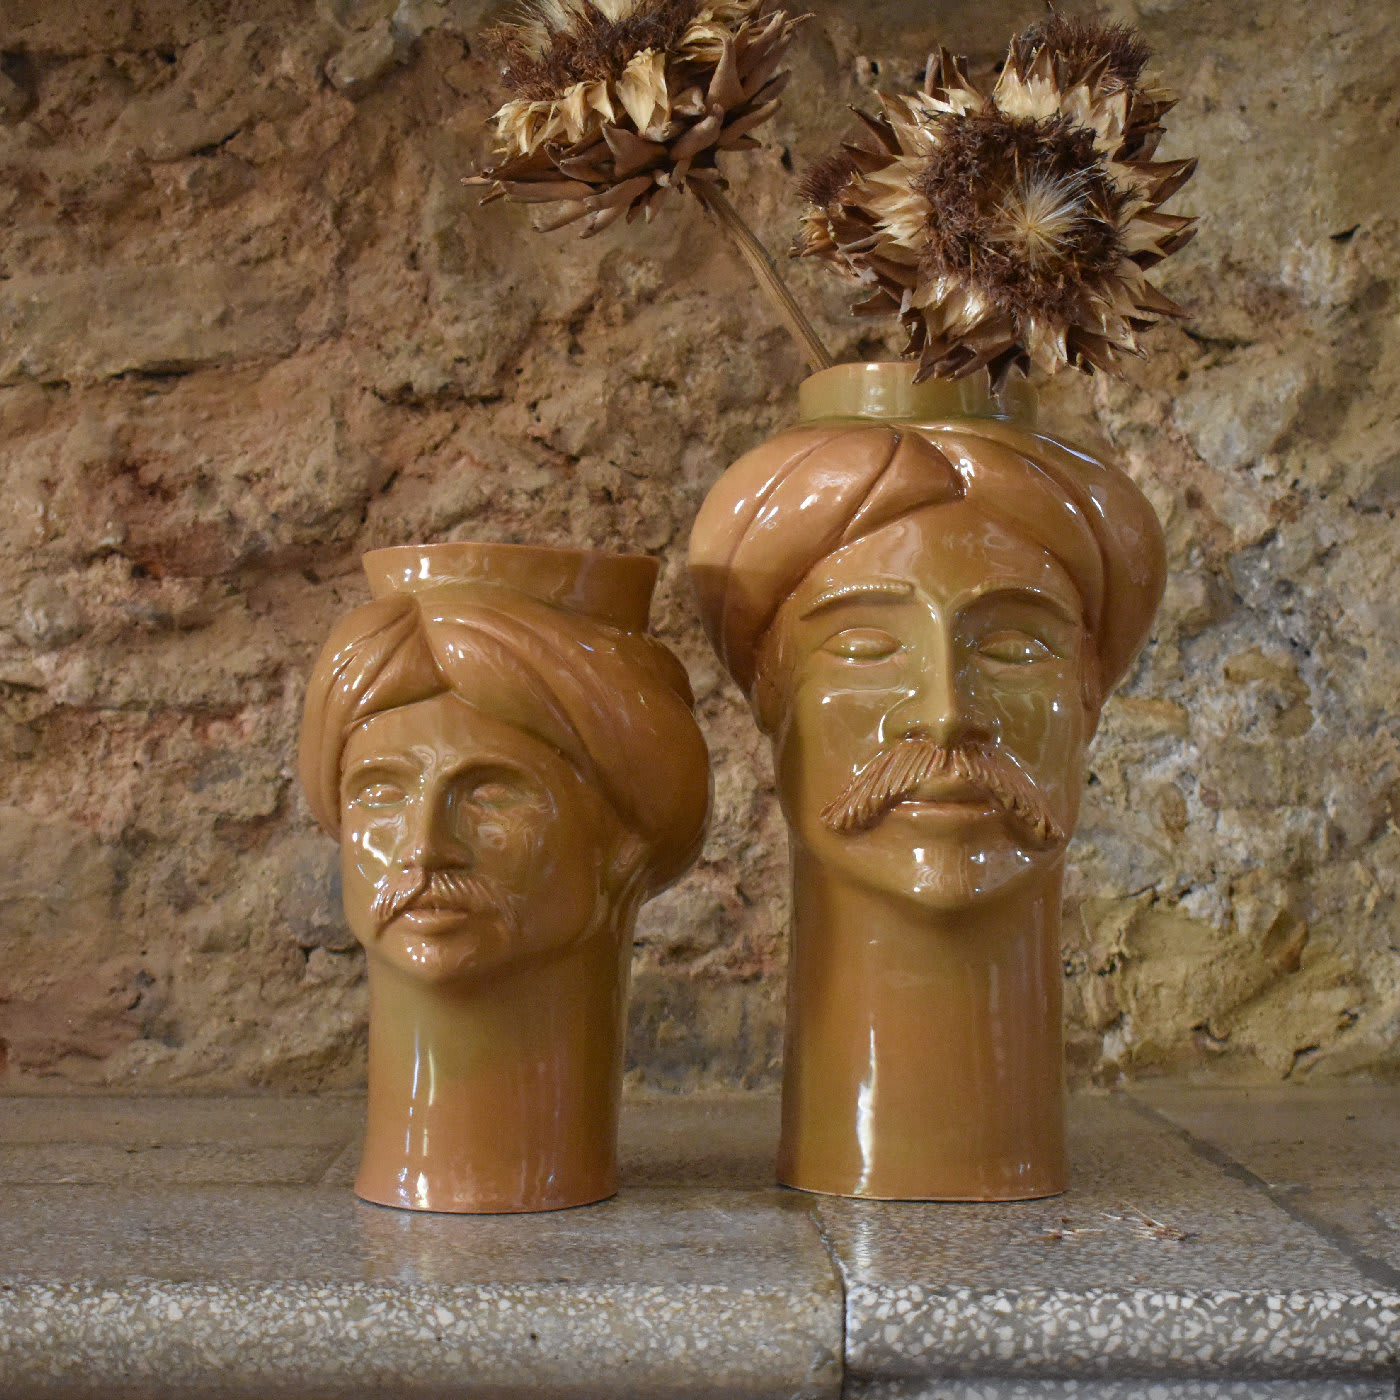 Solimano Ochre Vase - Crita Ceramiche